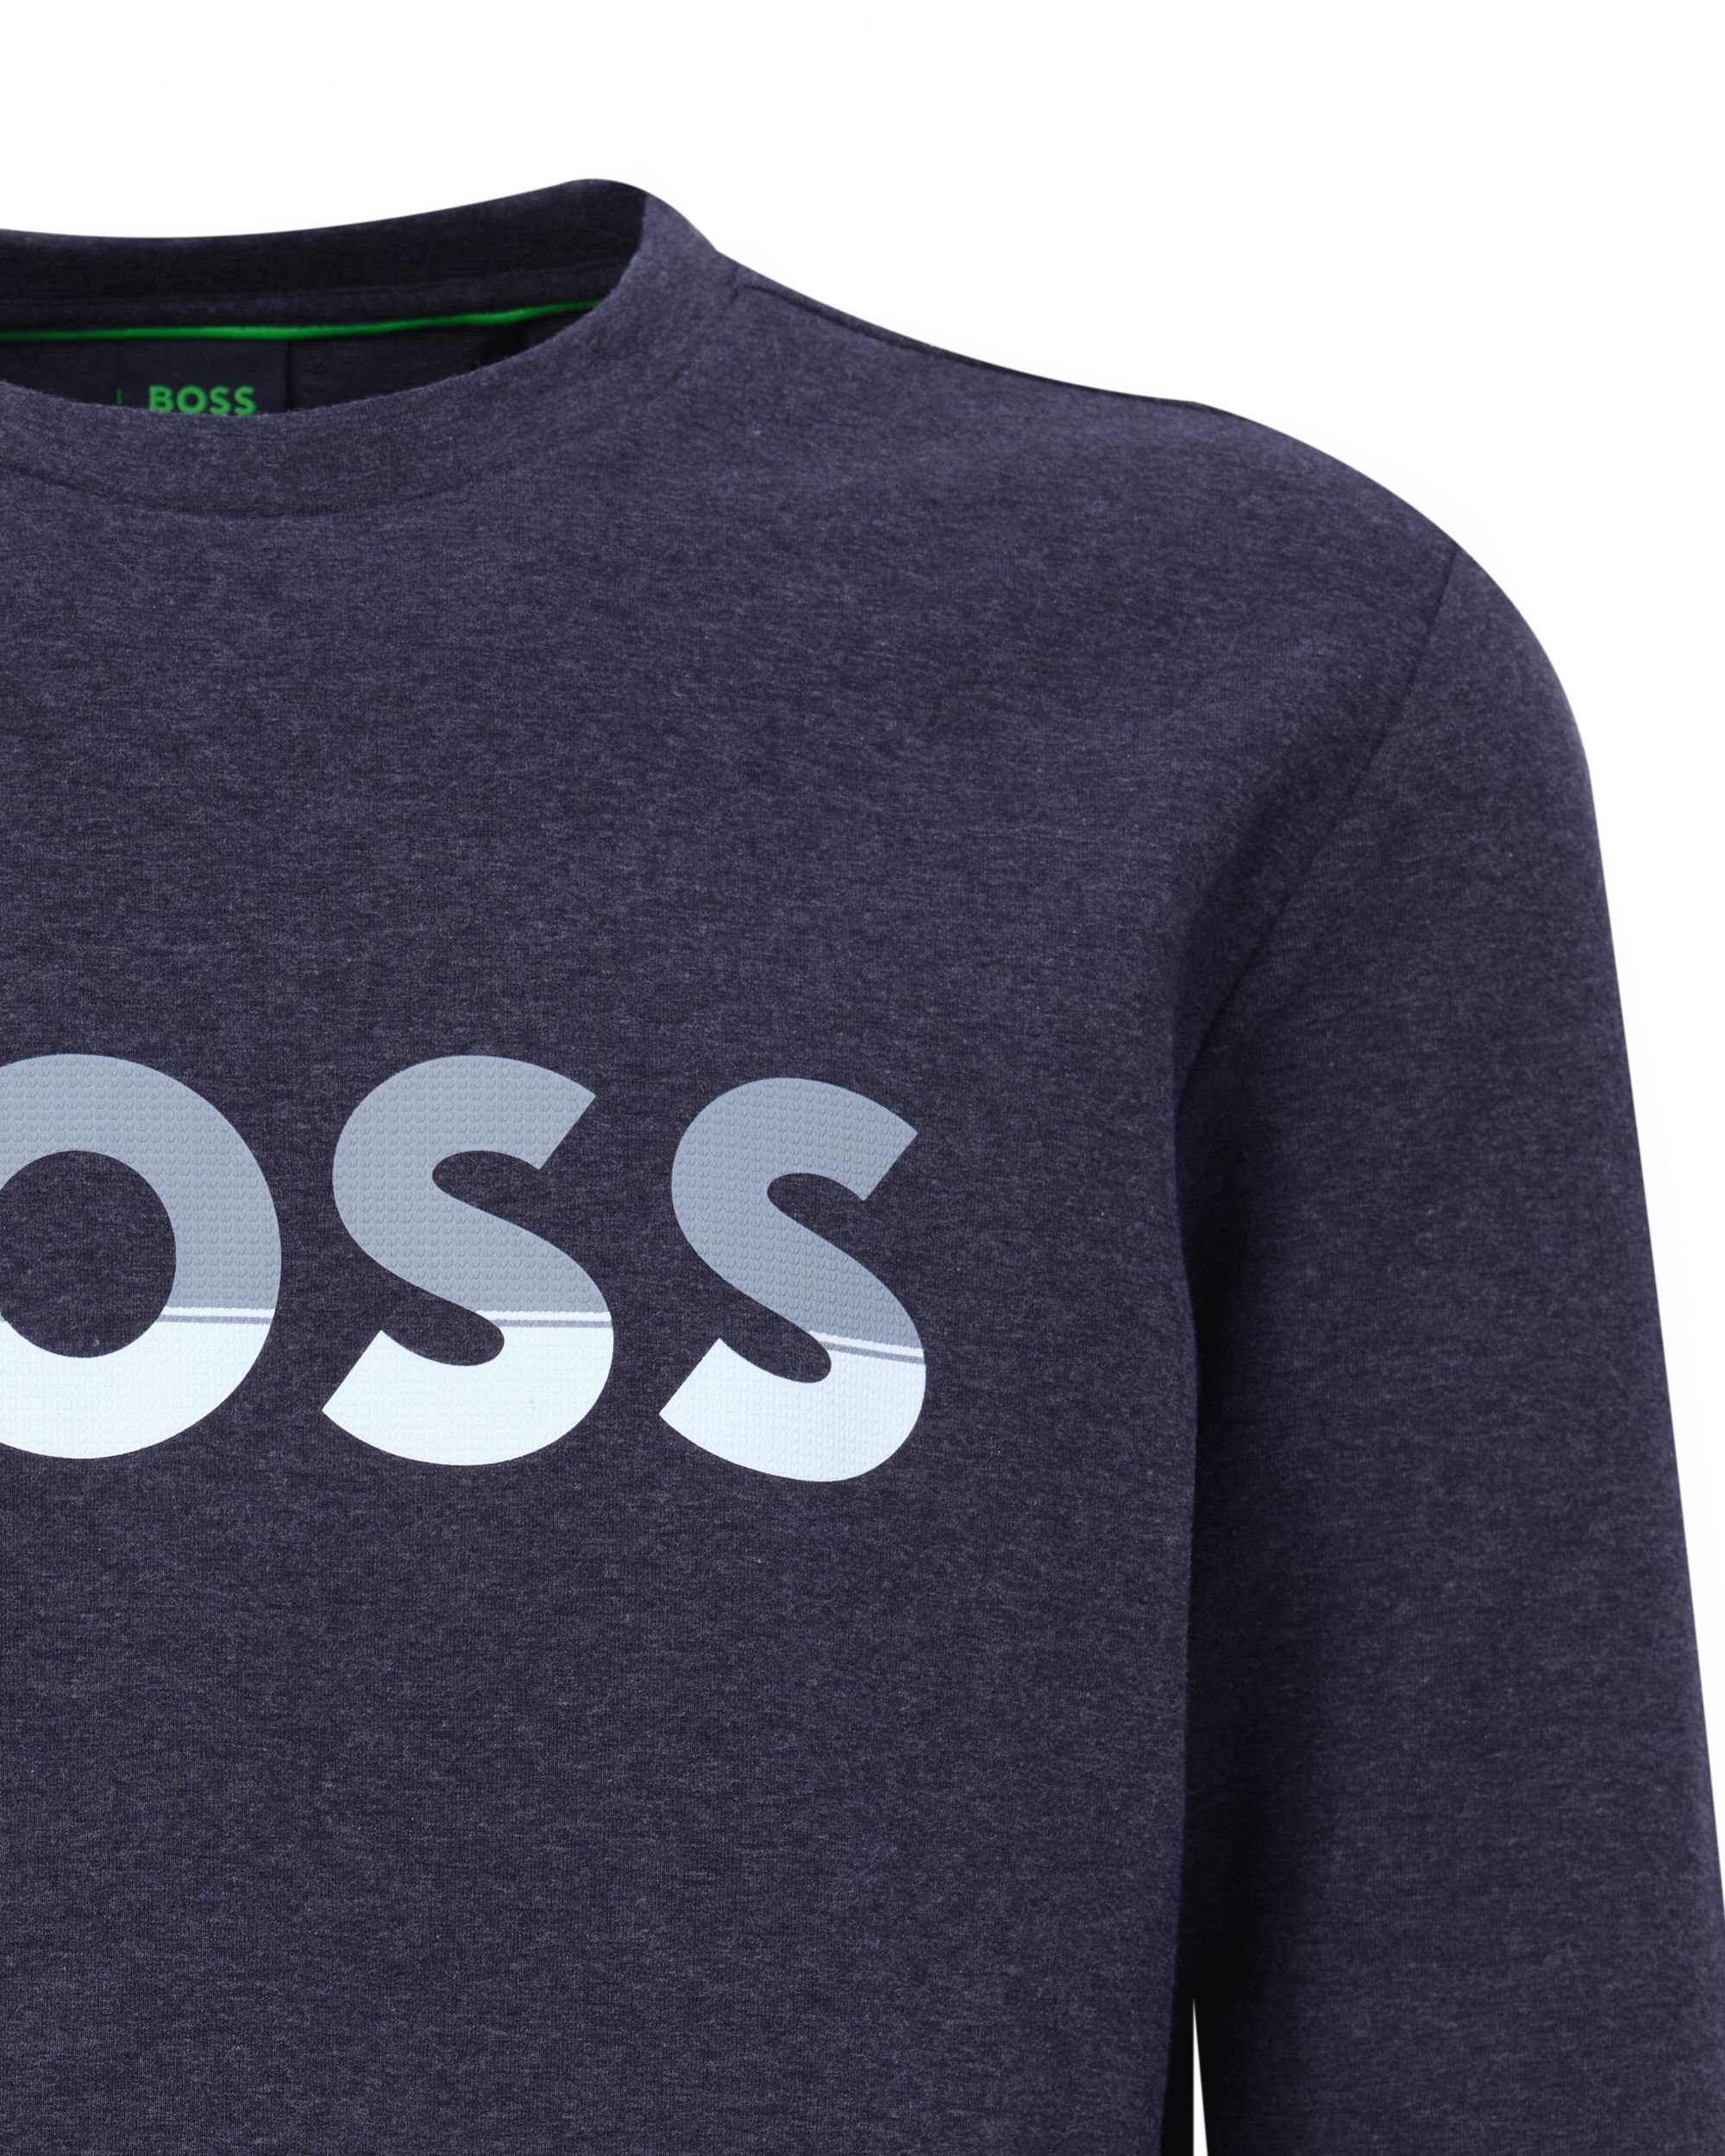 Hugo Boss Leisure T-shirt KM Grijs 082309-001-L